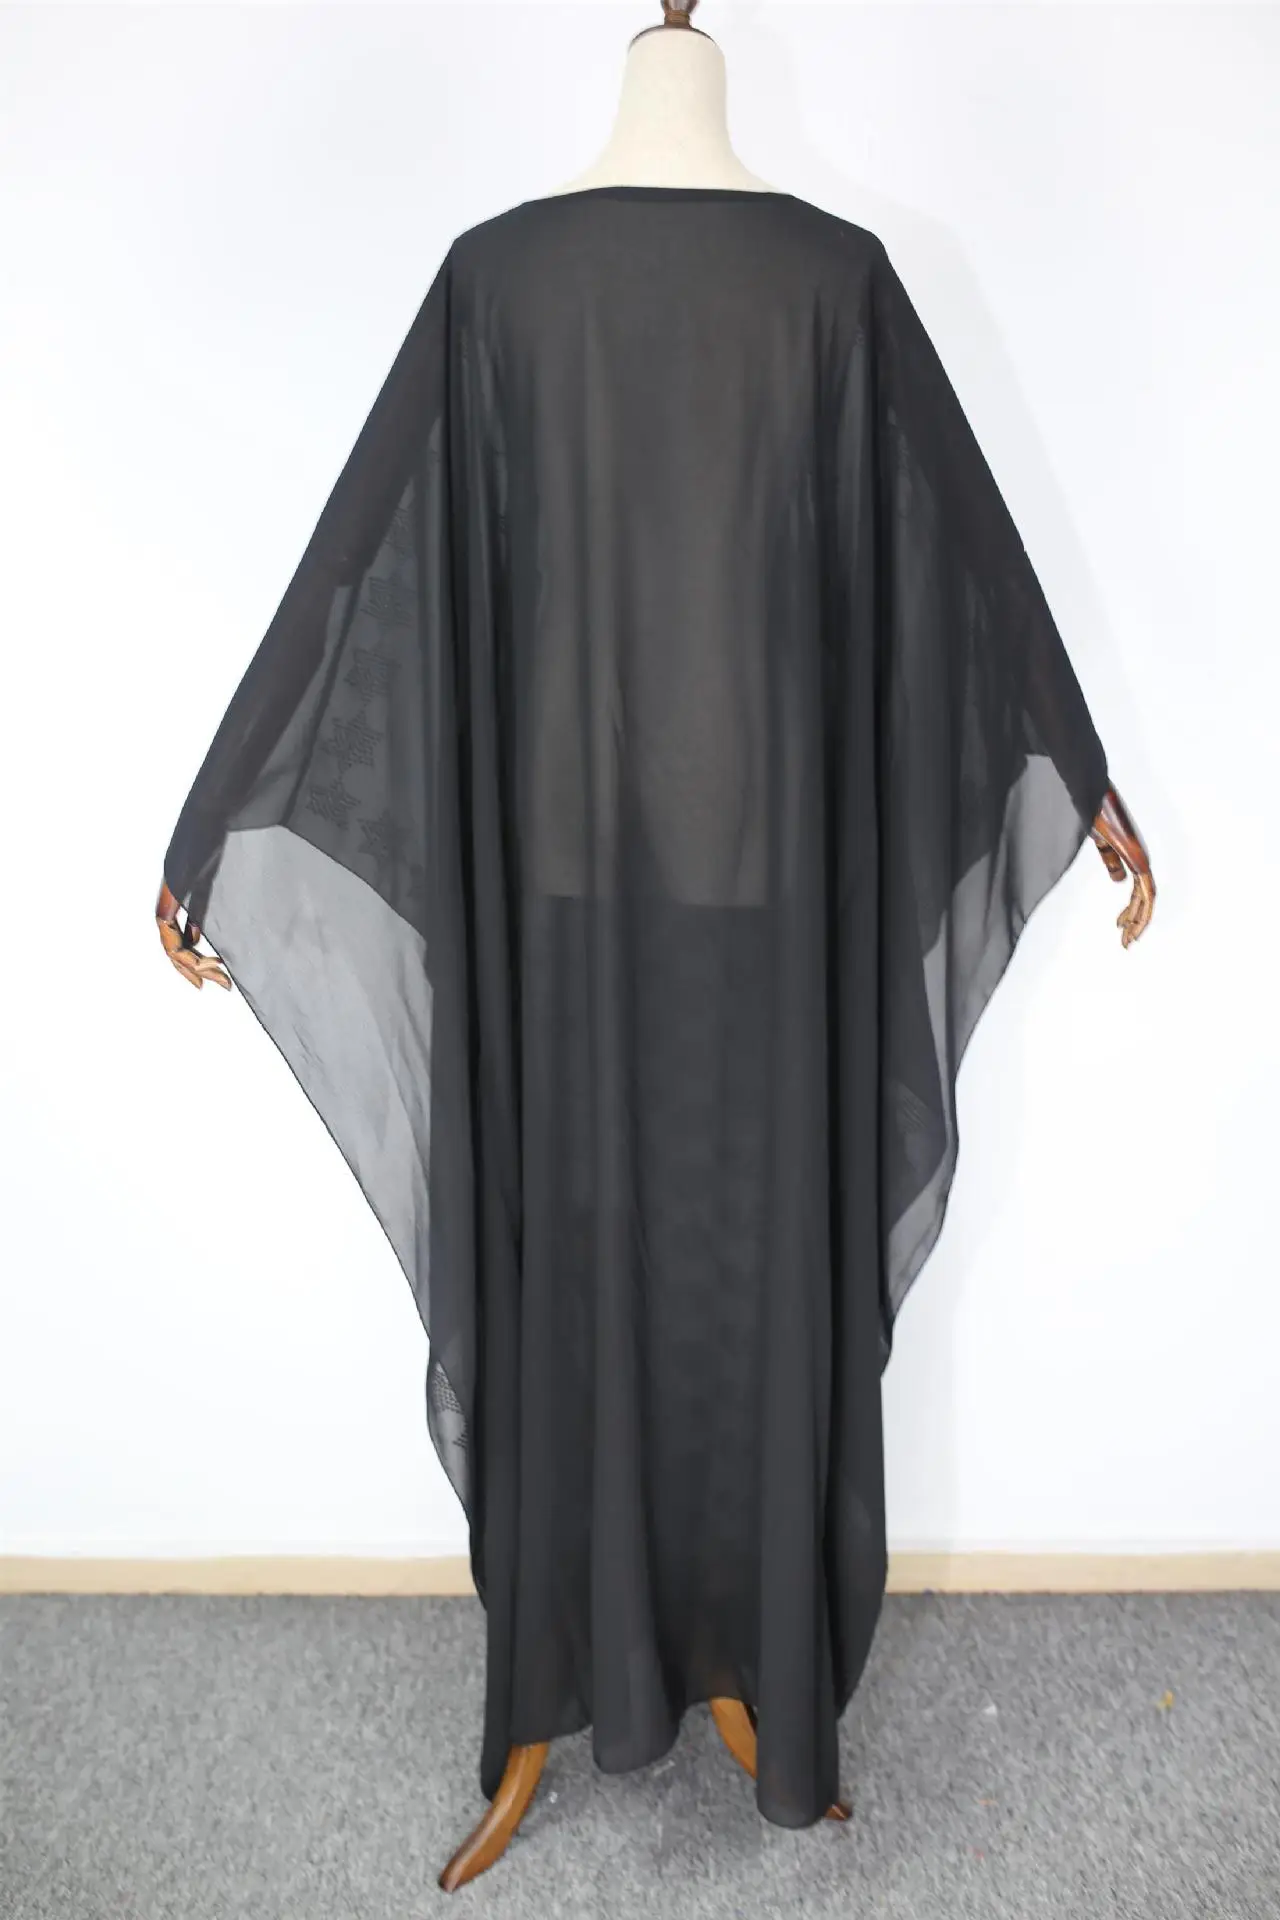 Африканские платья для женщин 2019 африканская одежда мусульманское длинное платье Высокое качество модная африканская одежда со стразами д... от AliExpress RU&CIS NEW